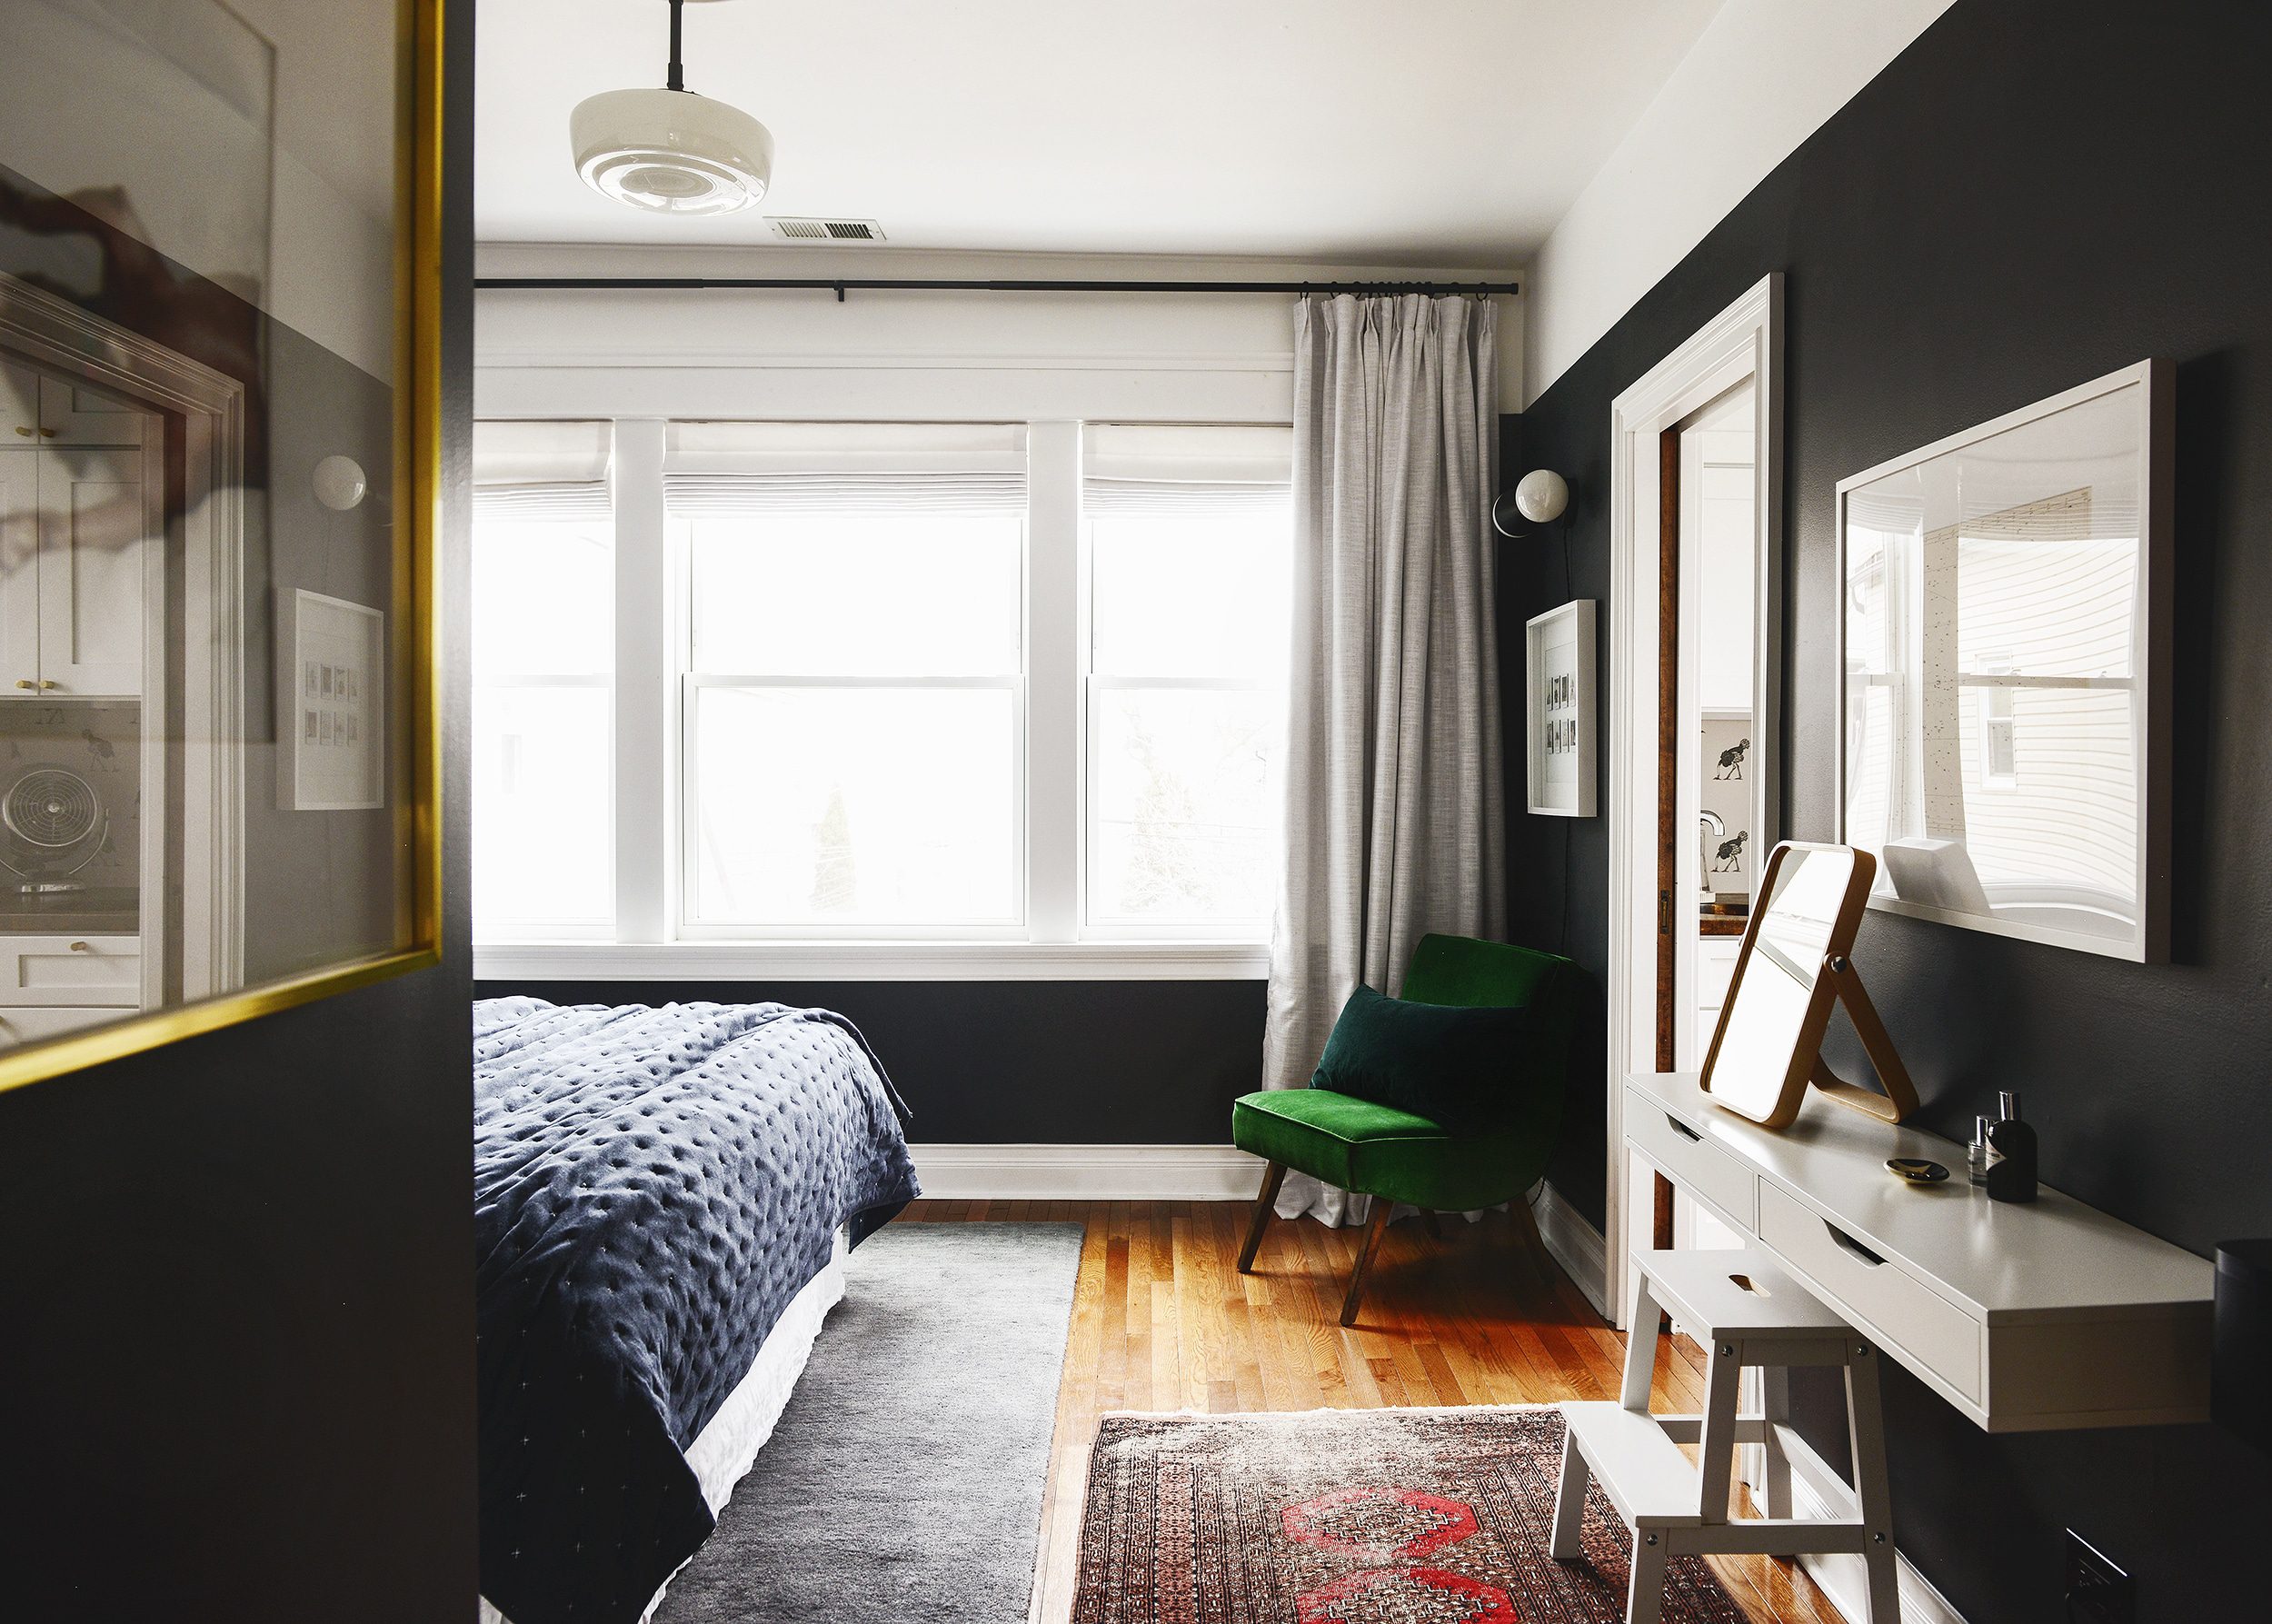 Best of Amazon via Yellow Brick Home - Bedroom Design! | Bedroom walls painted Benjamin Moore Raccoon Fur, navy bedding and a velvet green chair.